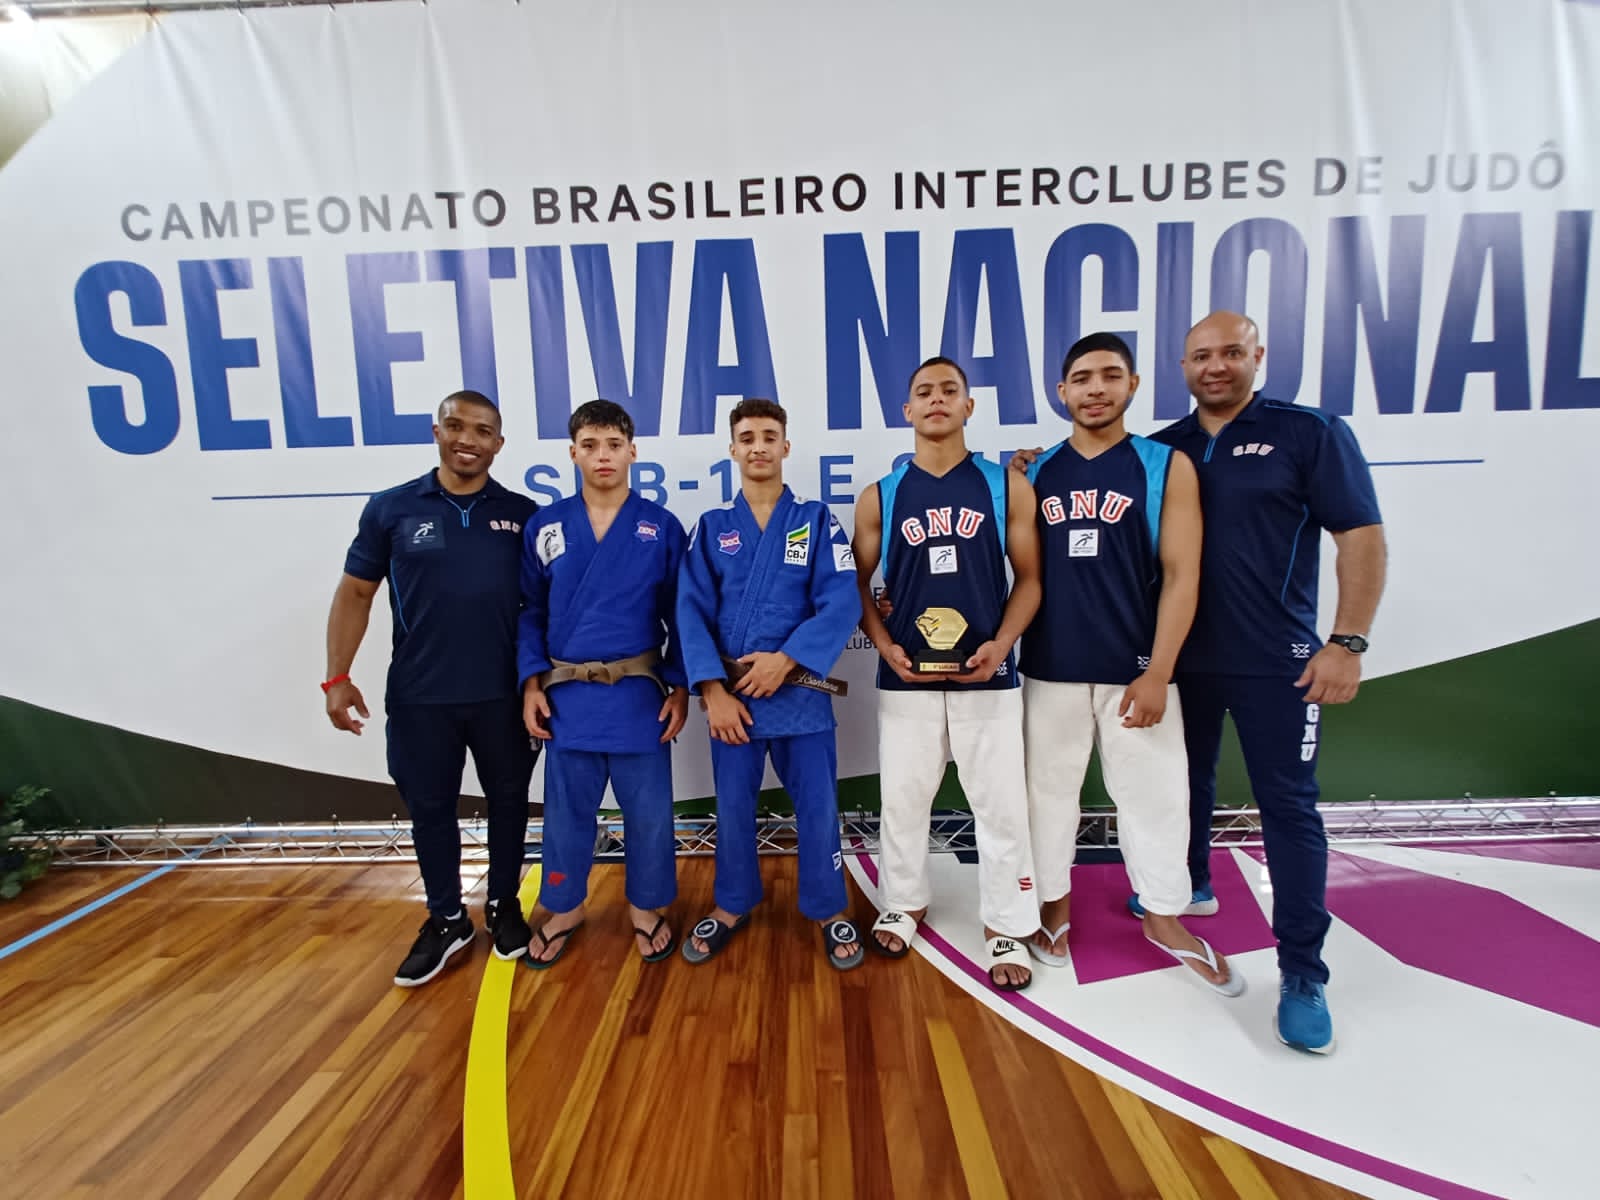 Campeonato Brasileiro Interclubes CBI® - Seletiva Nacional SUB 18 - 2023/2024